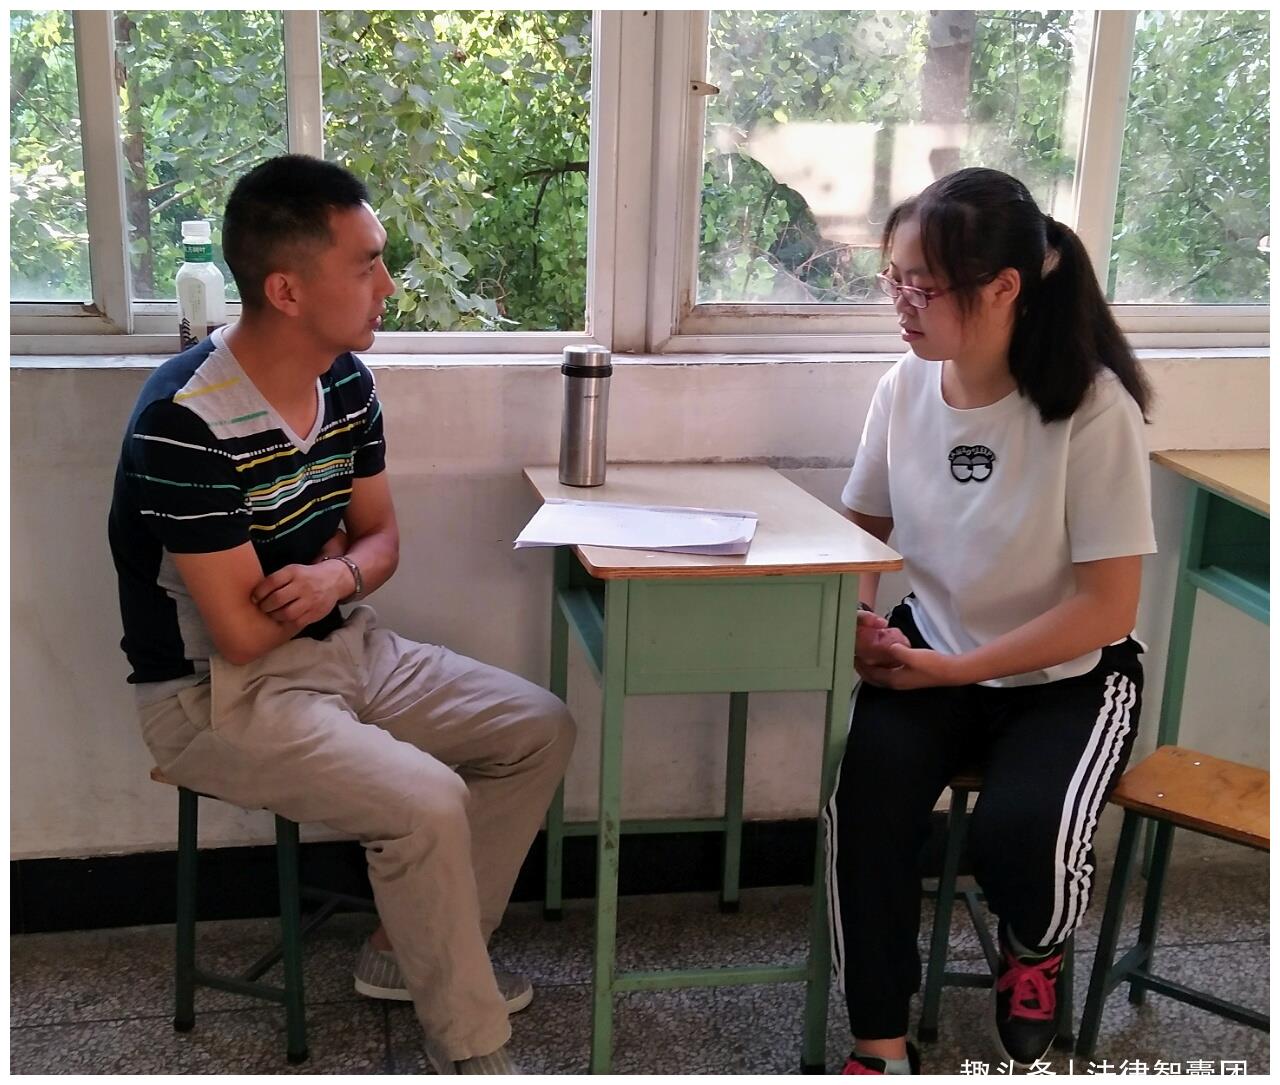 学院召开违纪处分学生和解除处分学生教育警示会-欢迎访问桂林航天工业学院电子信息与自动化学院